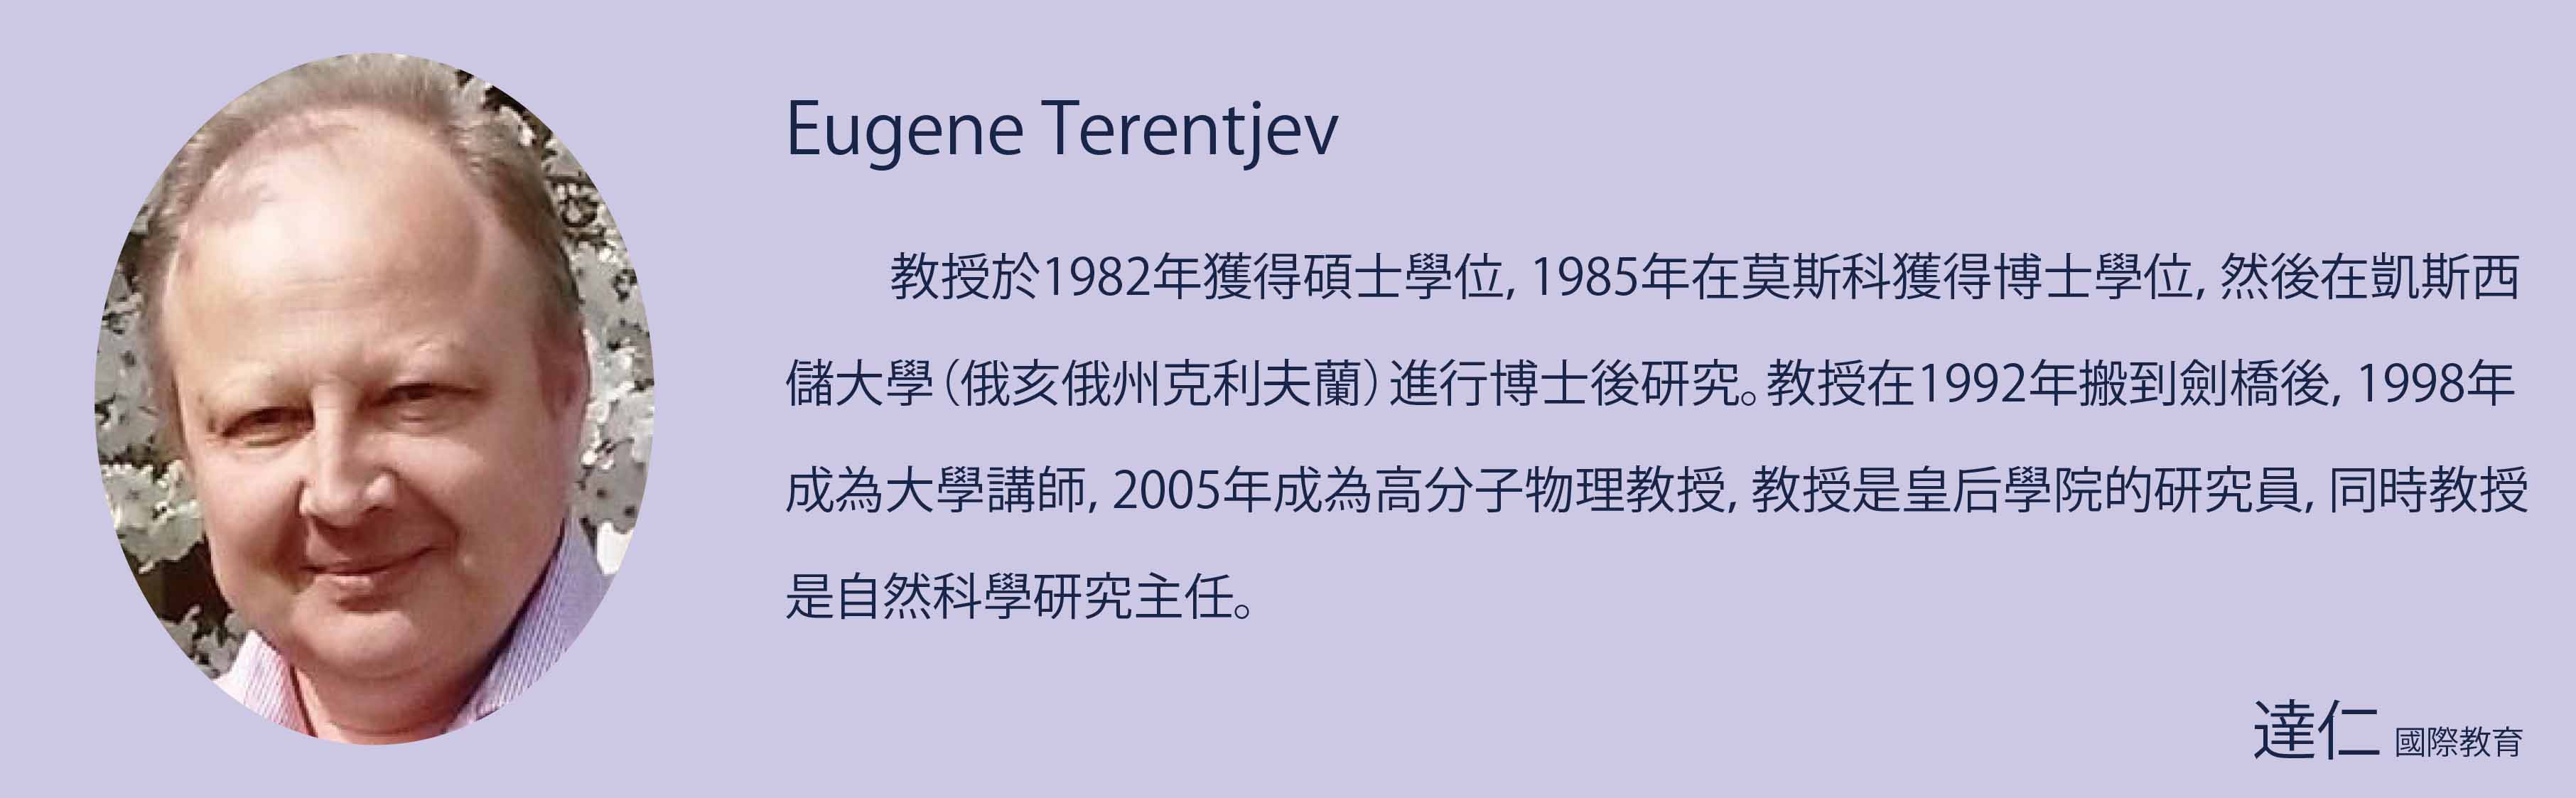 Eugene Terentjev